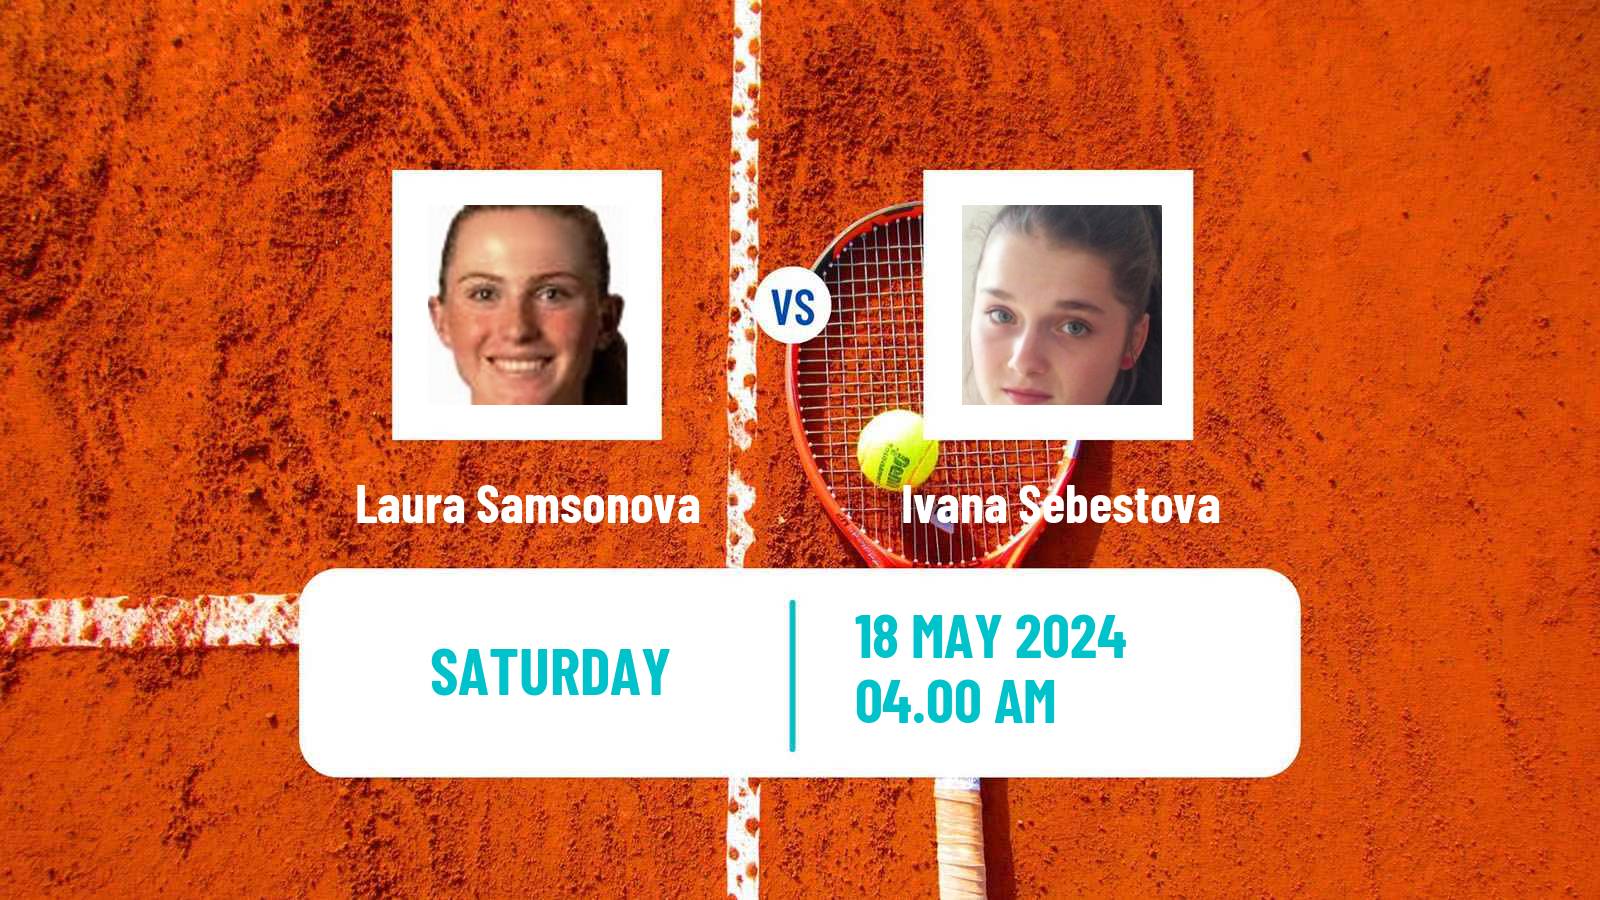 Tennis ITF W15 Kranjska Gora Women Laura Samsonova - Ivana Sebestova